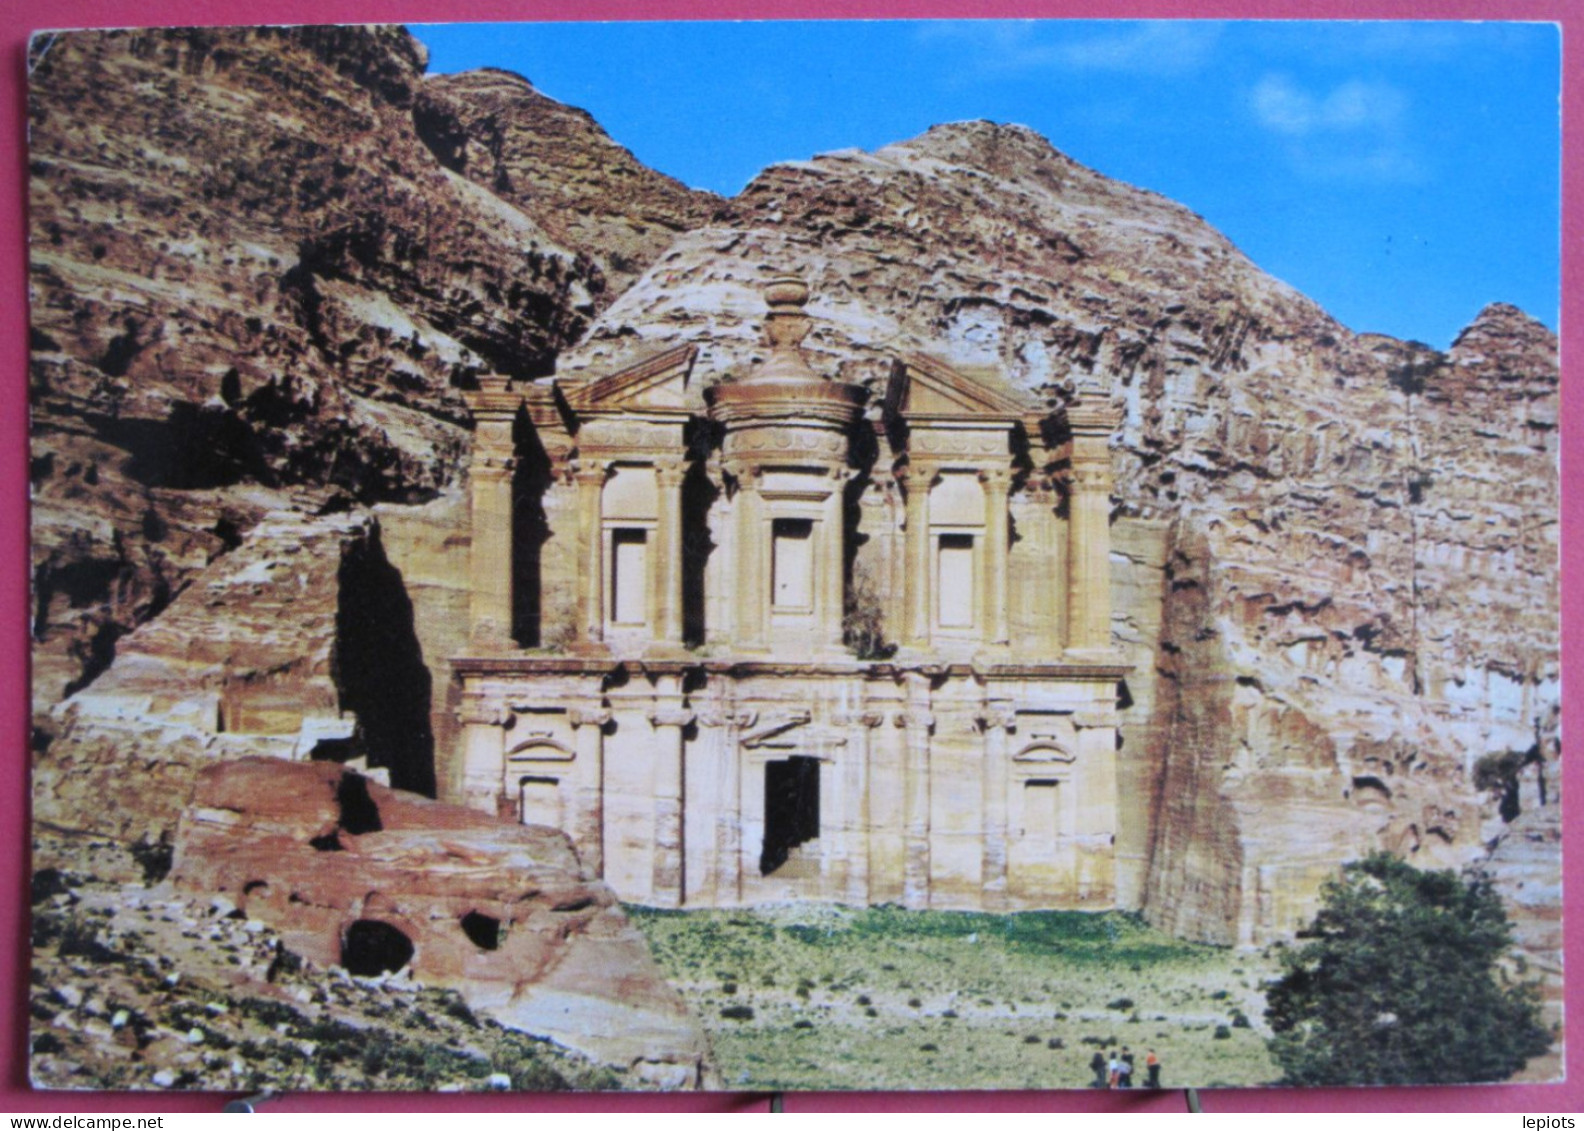 Jordanie - Ed-Deir - View Of Eddeer At Petra - Jordanie